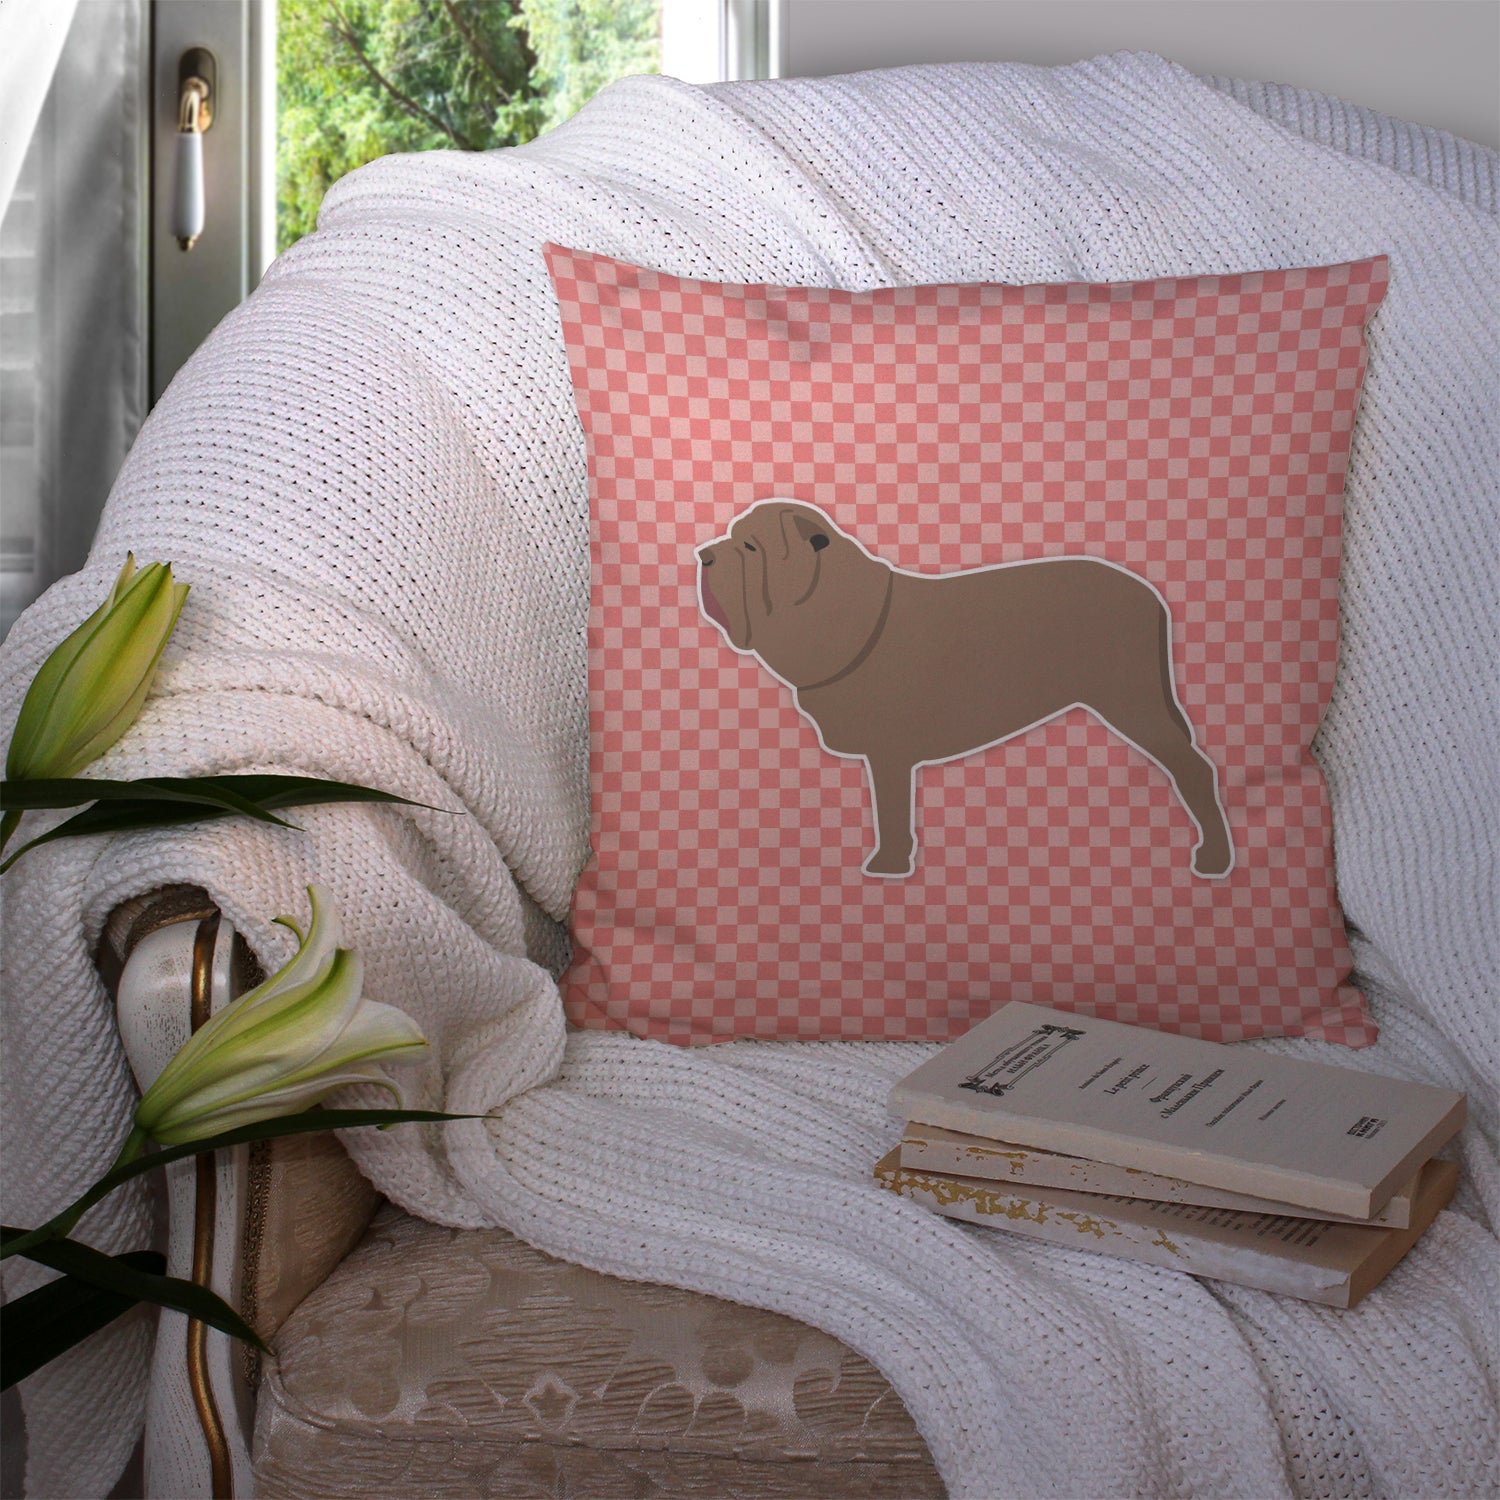 Neapolitan Mastiff Checkerboard Pink Fabric Decorative Pillow BB3665PW1414 - the-store.com